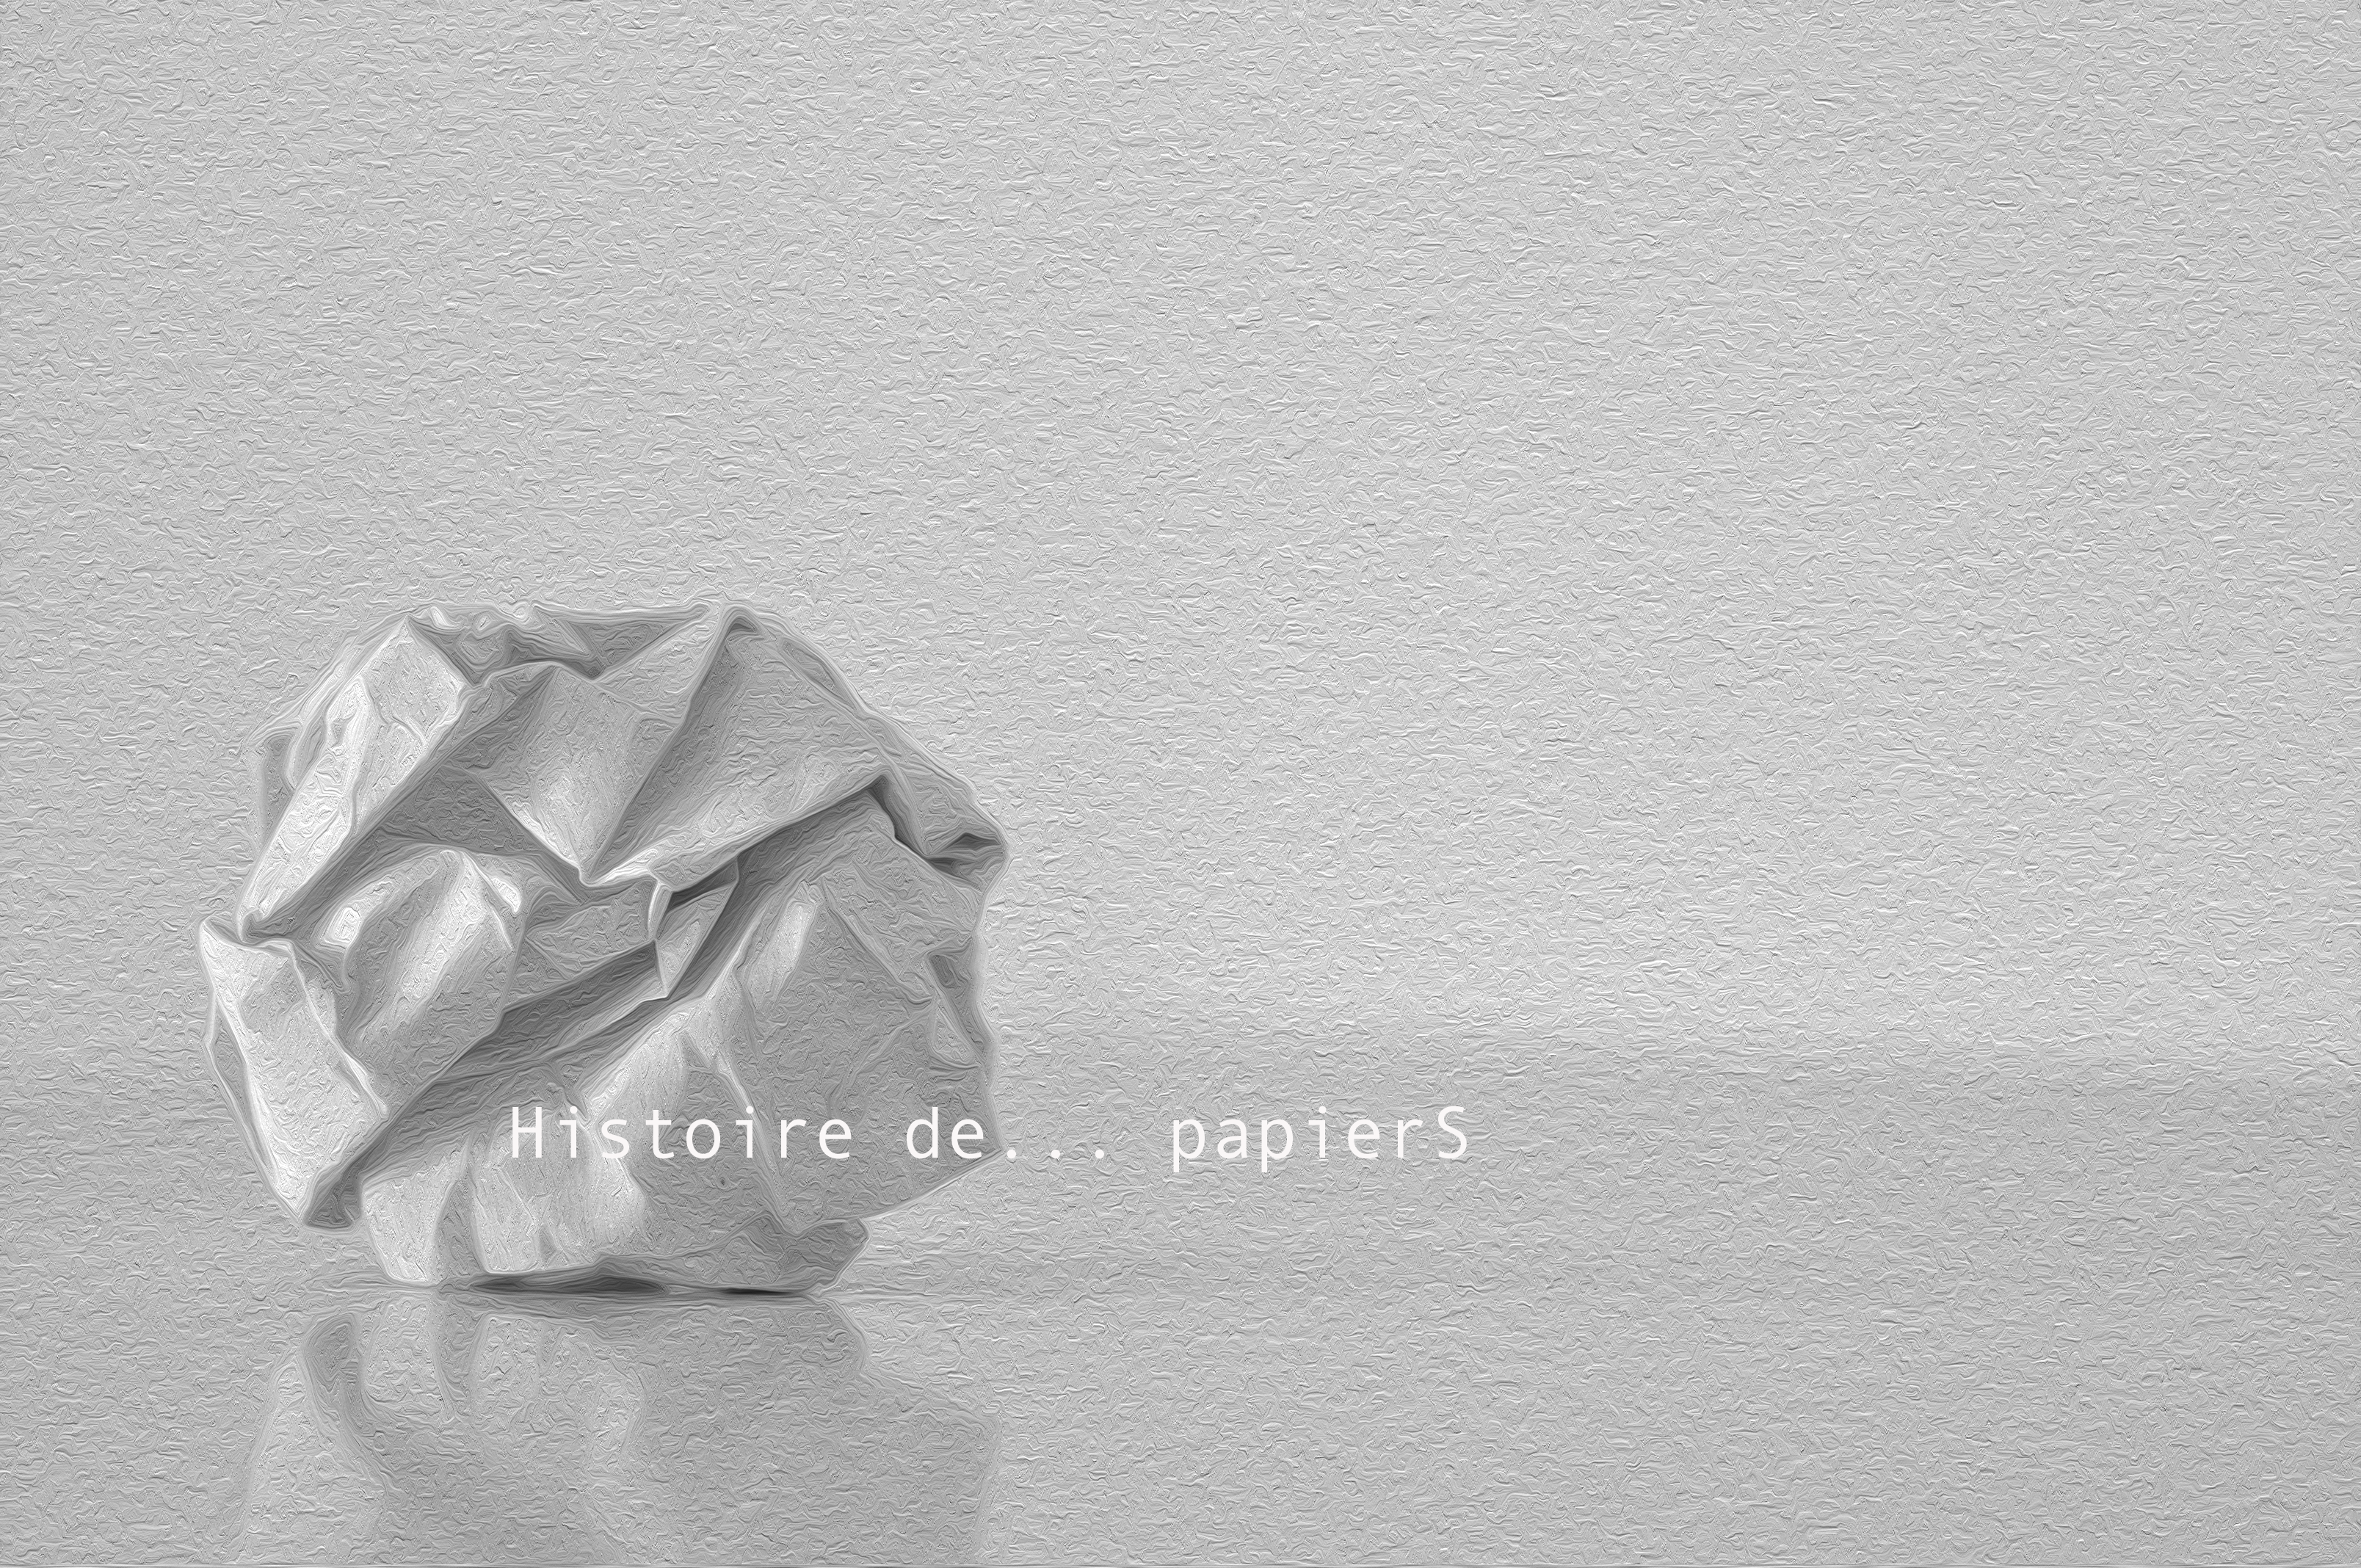 boule de papier blanc chiffonné sur fond blanc avec phrase histoire de papiers non imprimé